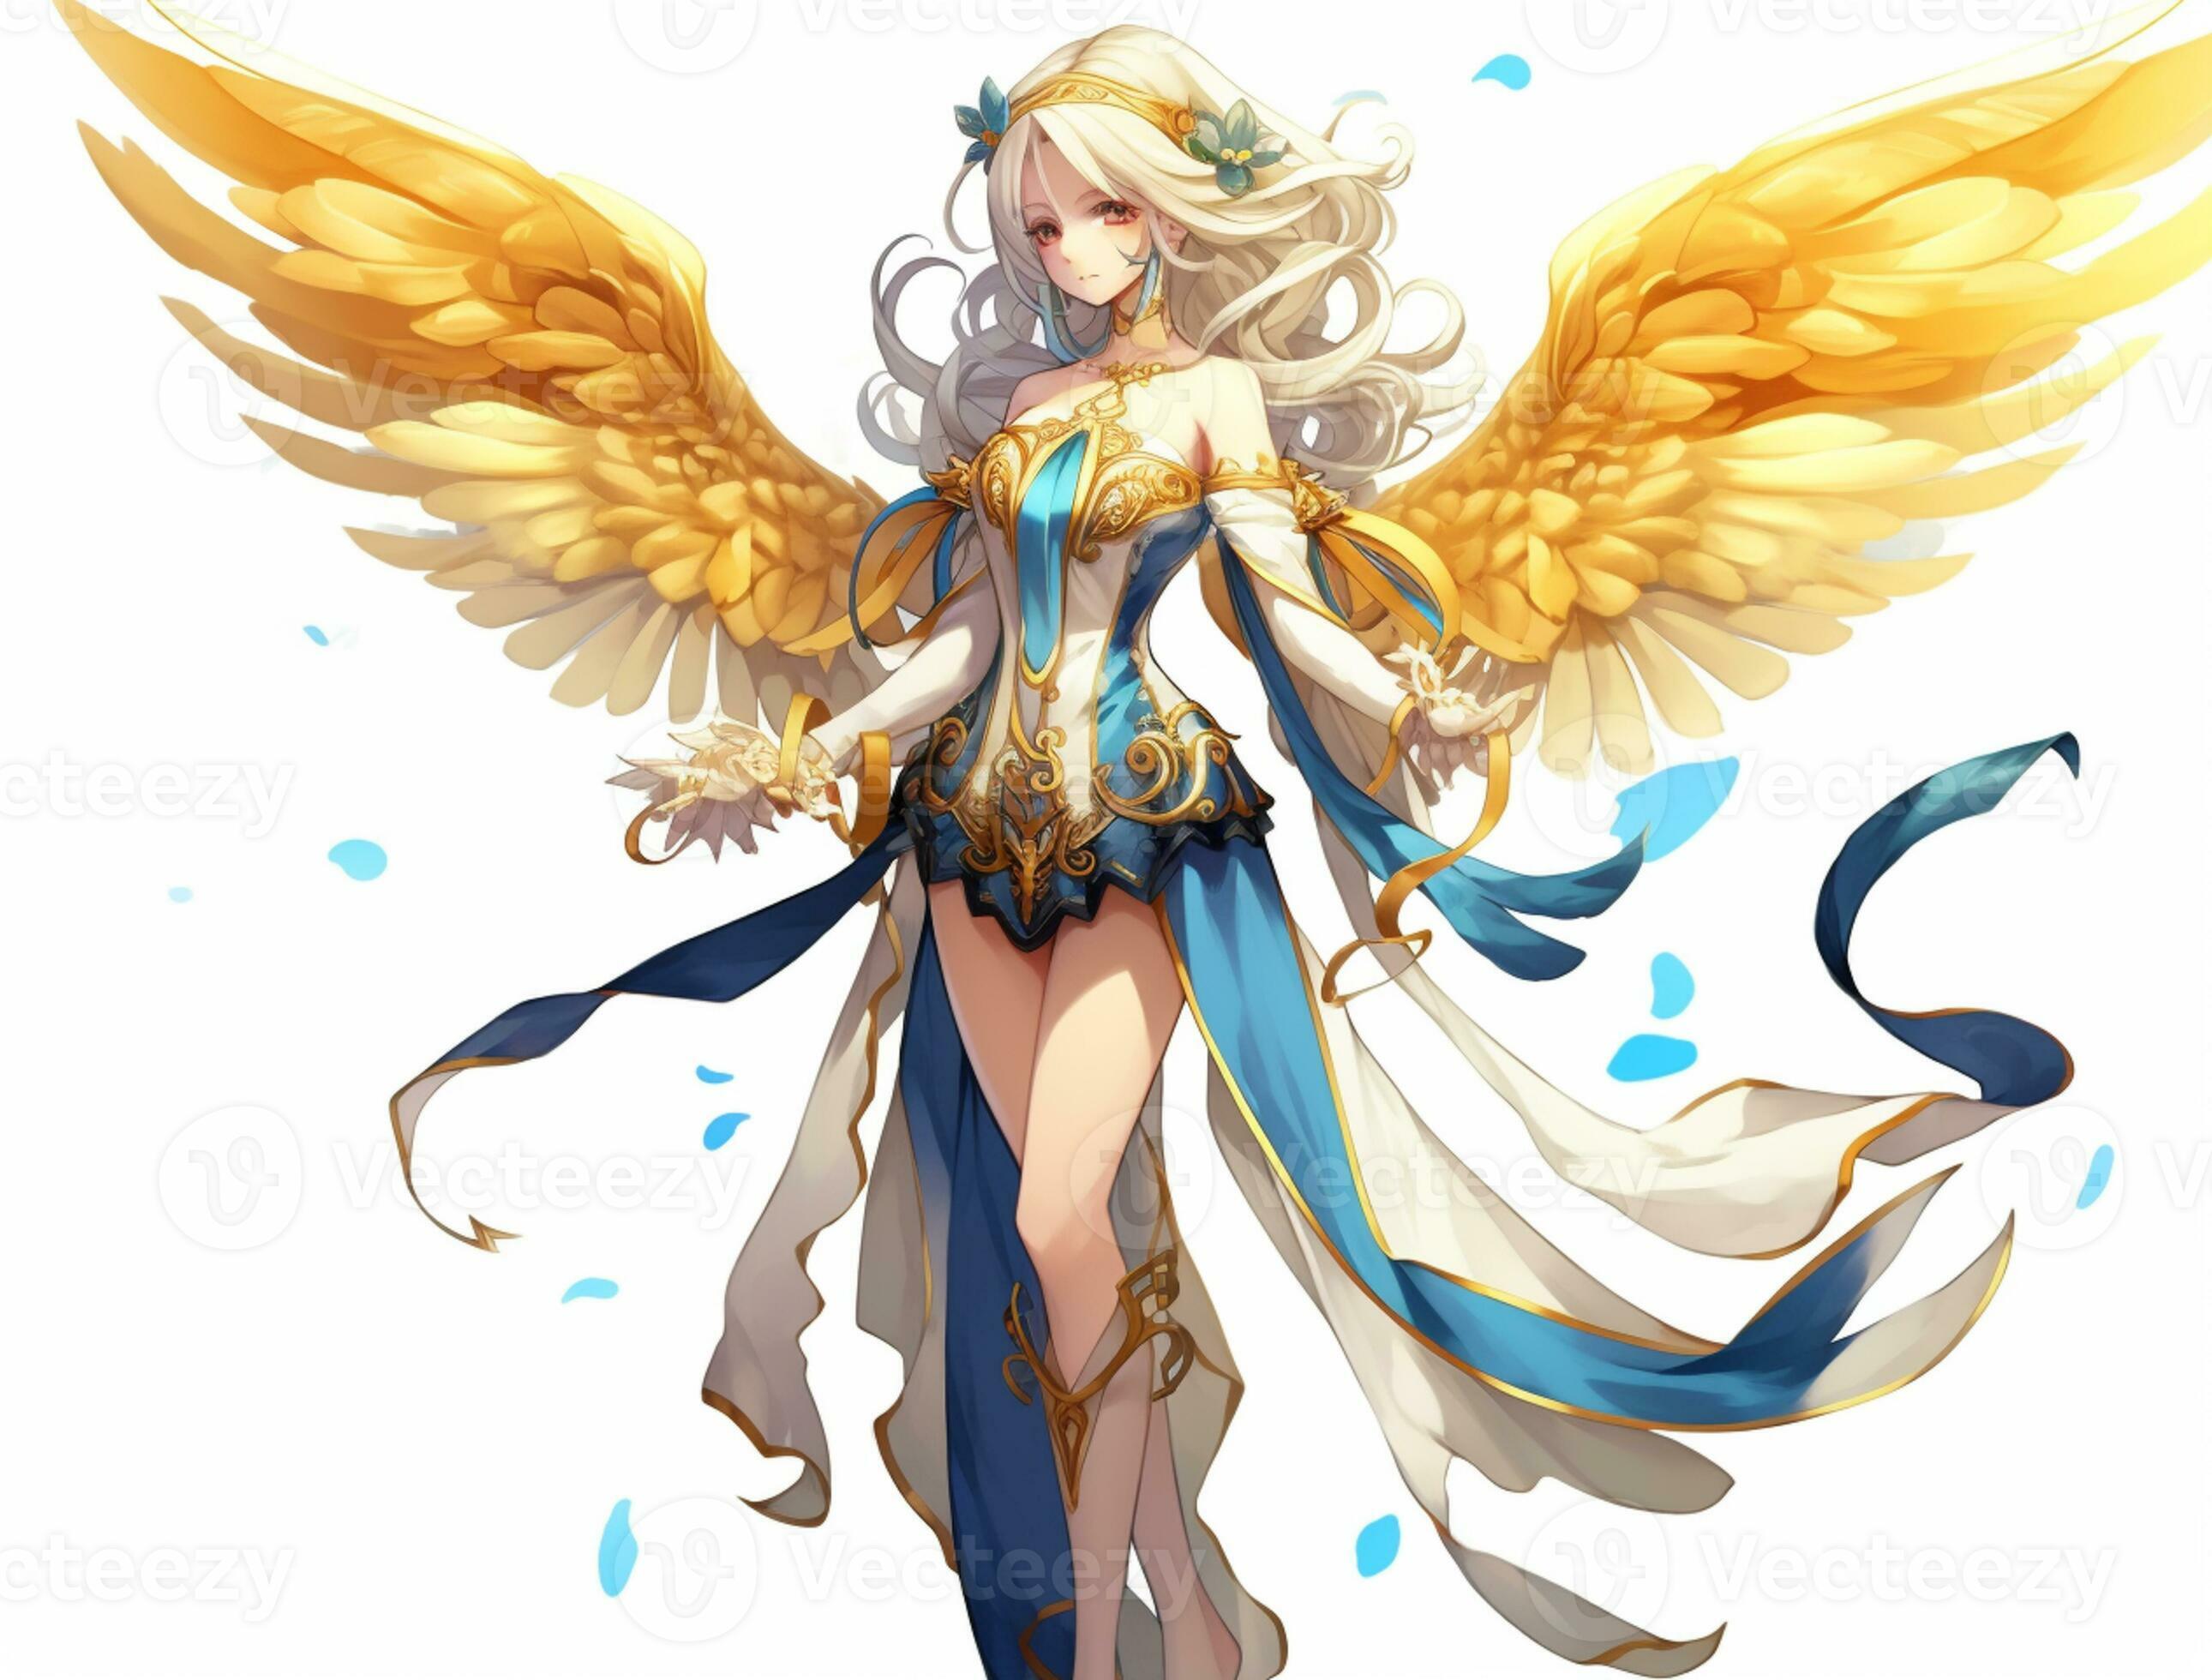 Linda anjo no estilo anime ilustração stock. Ilustração de estilo